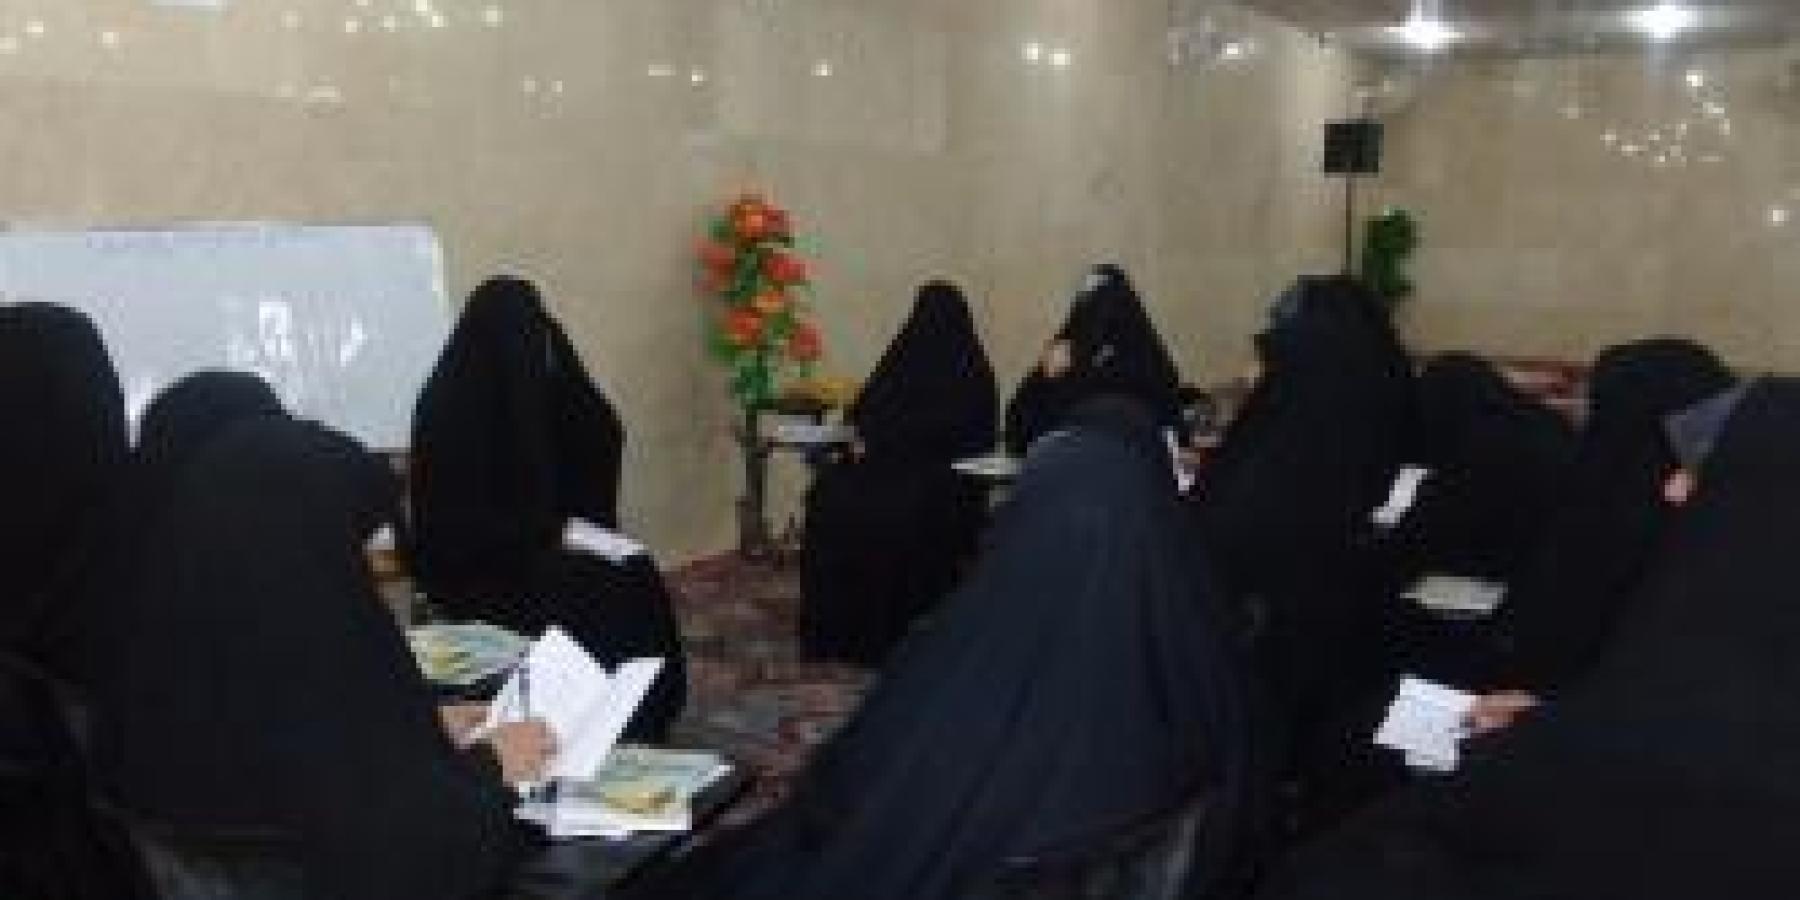 وحدة الأنشطة الدينية النسوية تقيم دورة تبليغية متخصصة لمنتسبات العتبة العلوية المقدسة